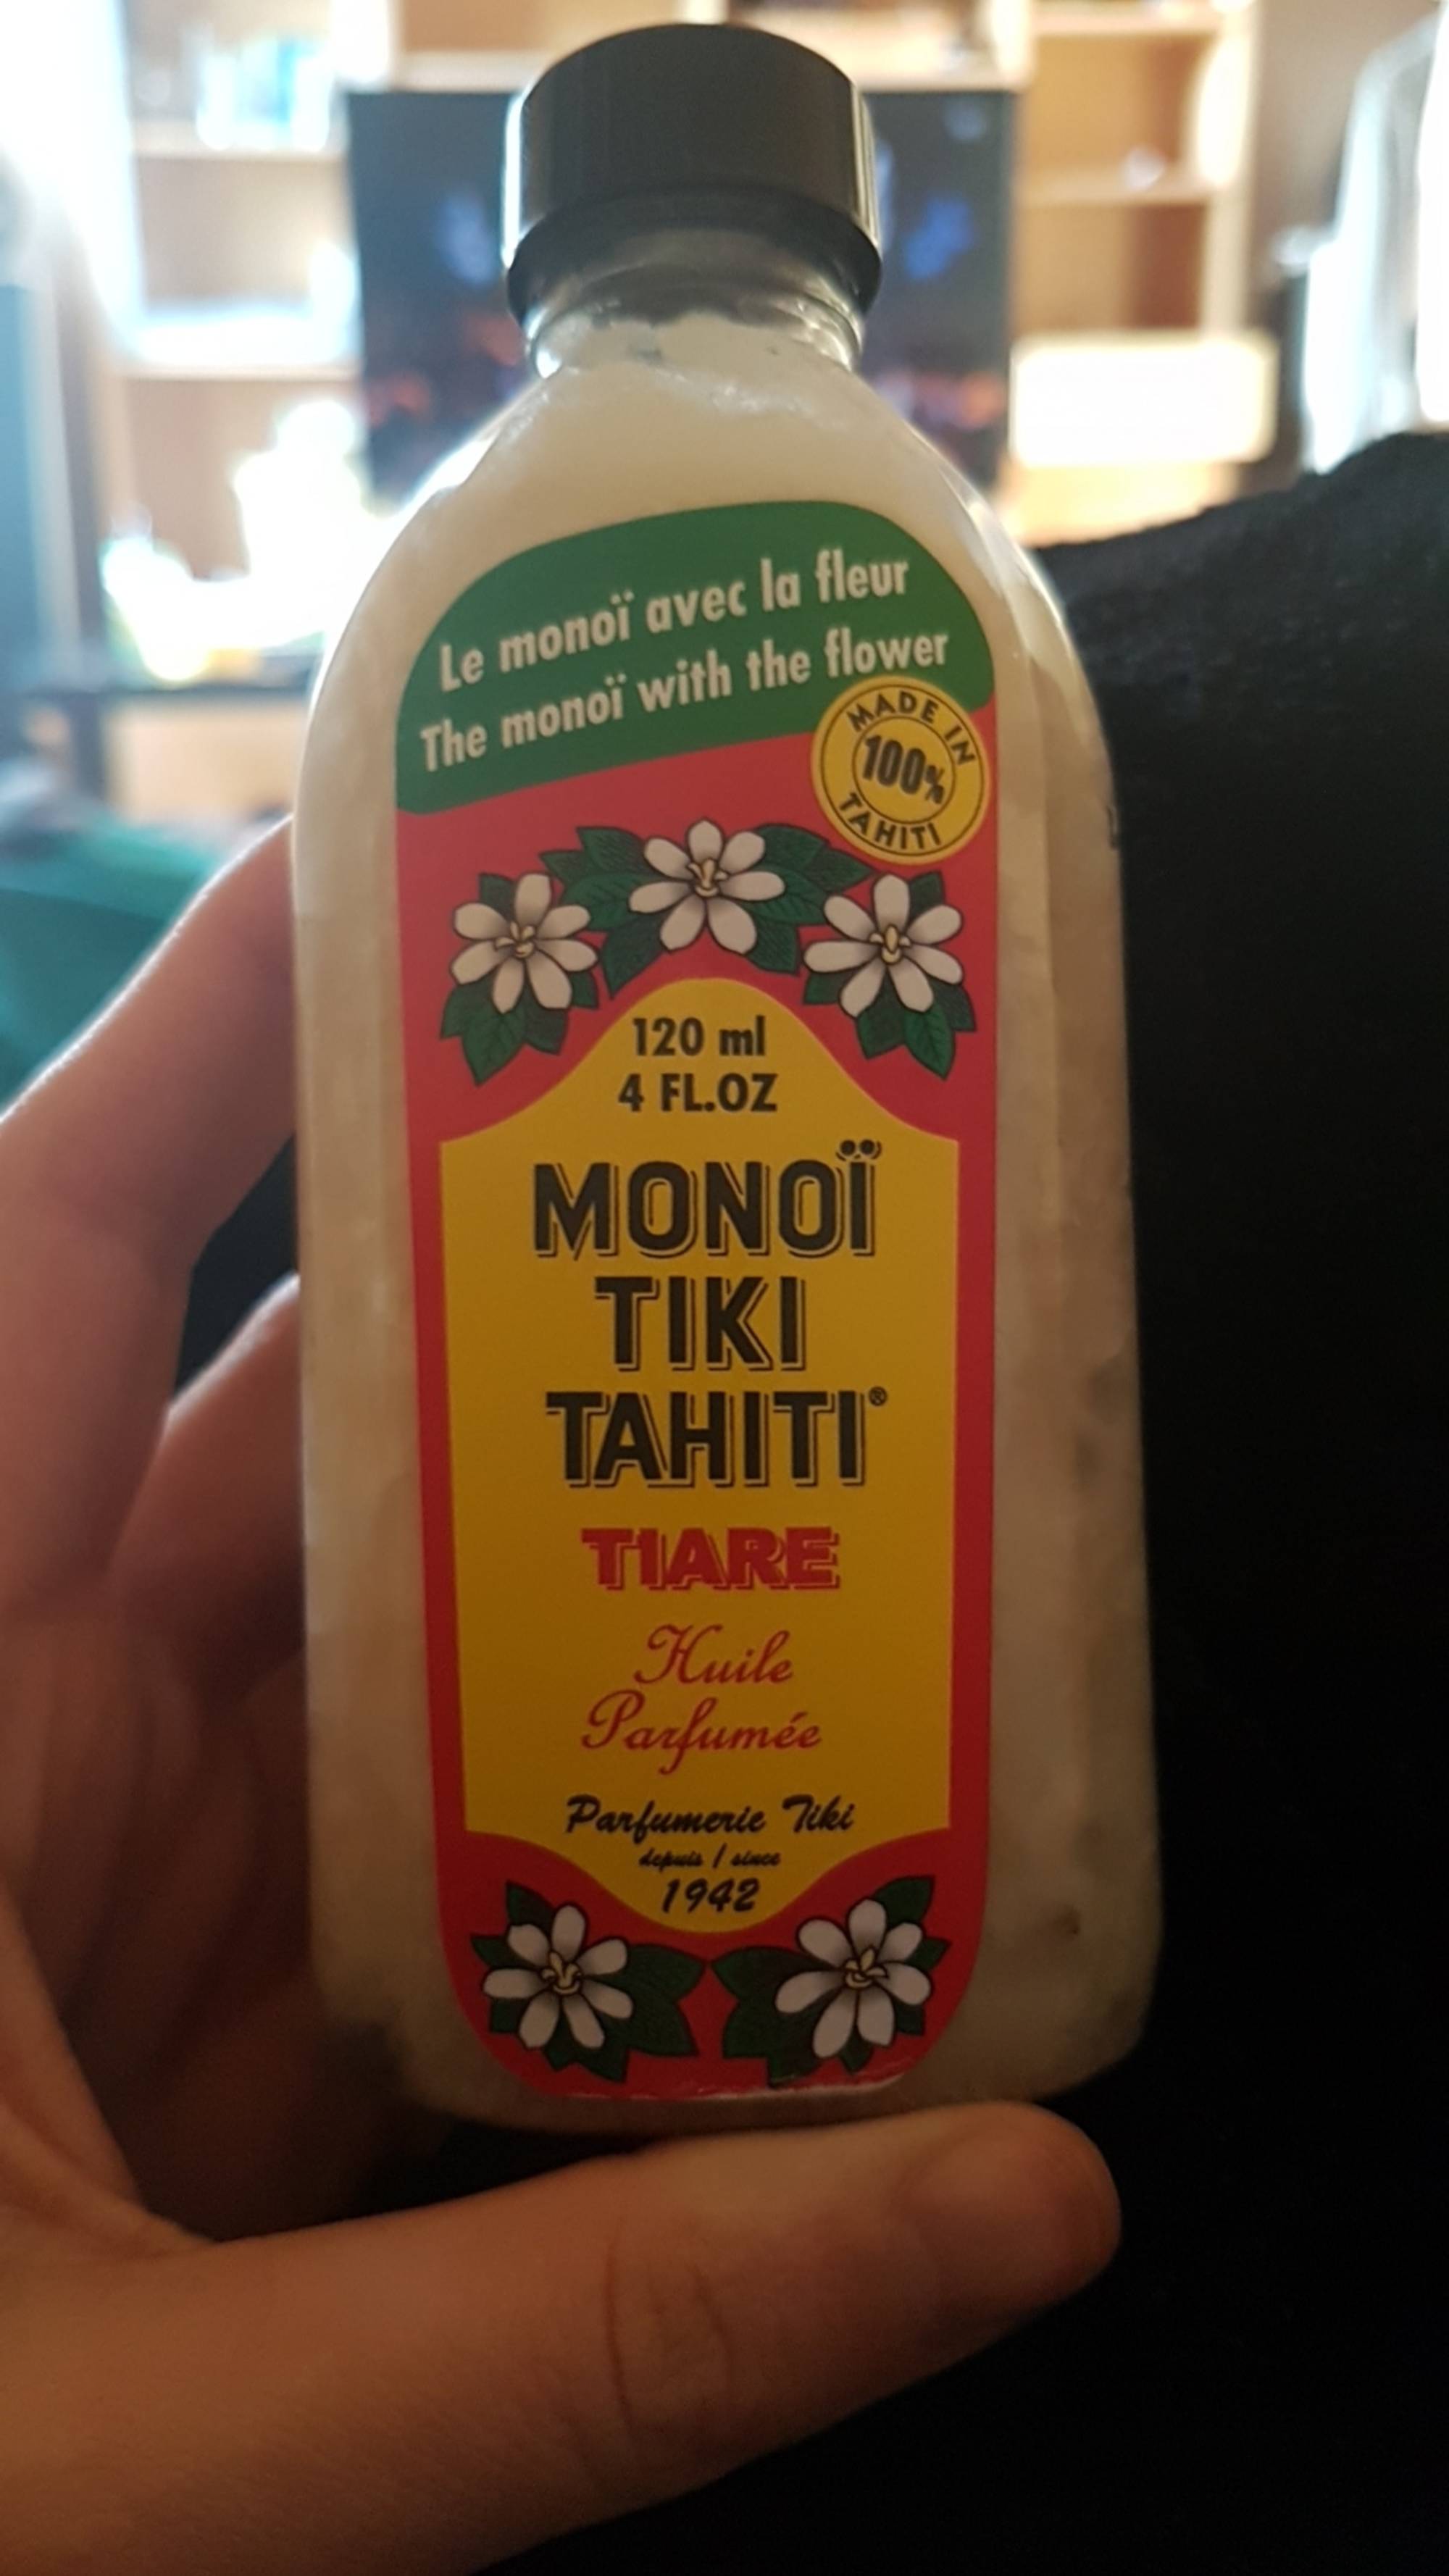 PARFUMERIE TIKI - Monoï tiki Tahiti - Tiaré huile parfumée